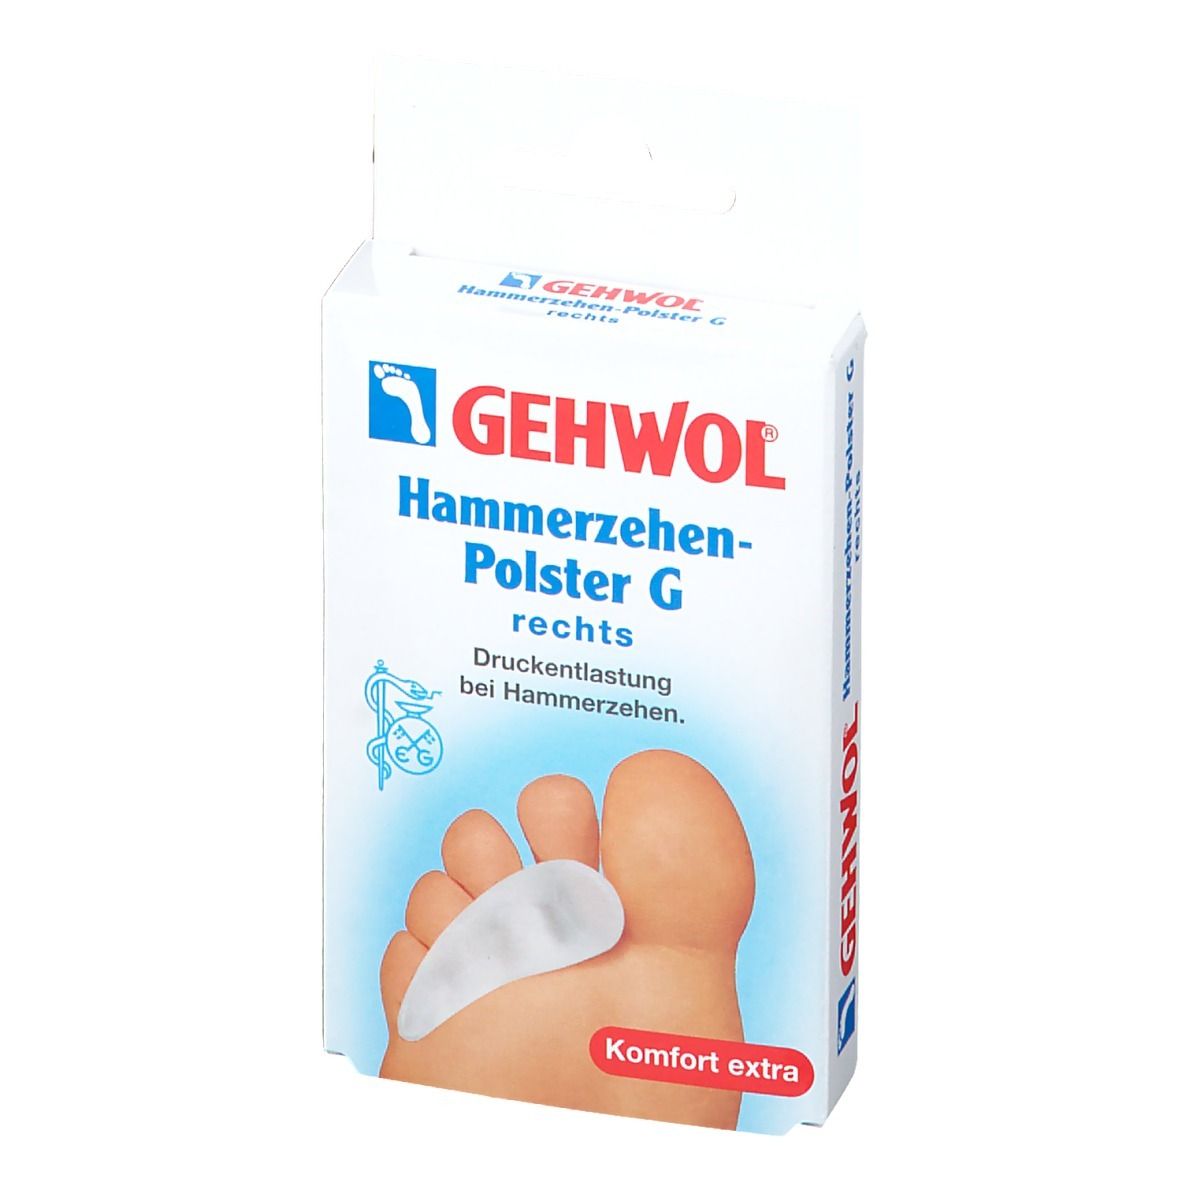 GEHWOL® Hammerzehen-Polster G